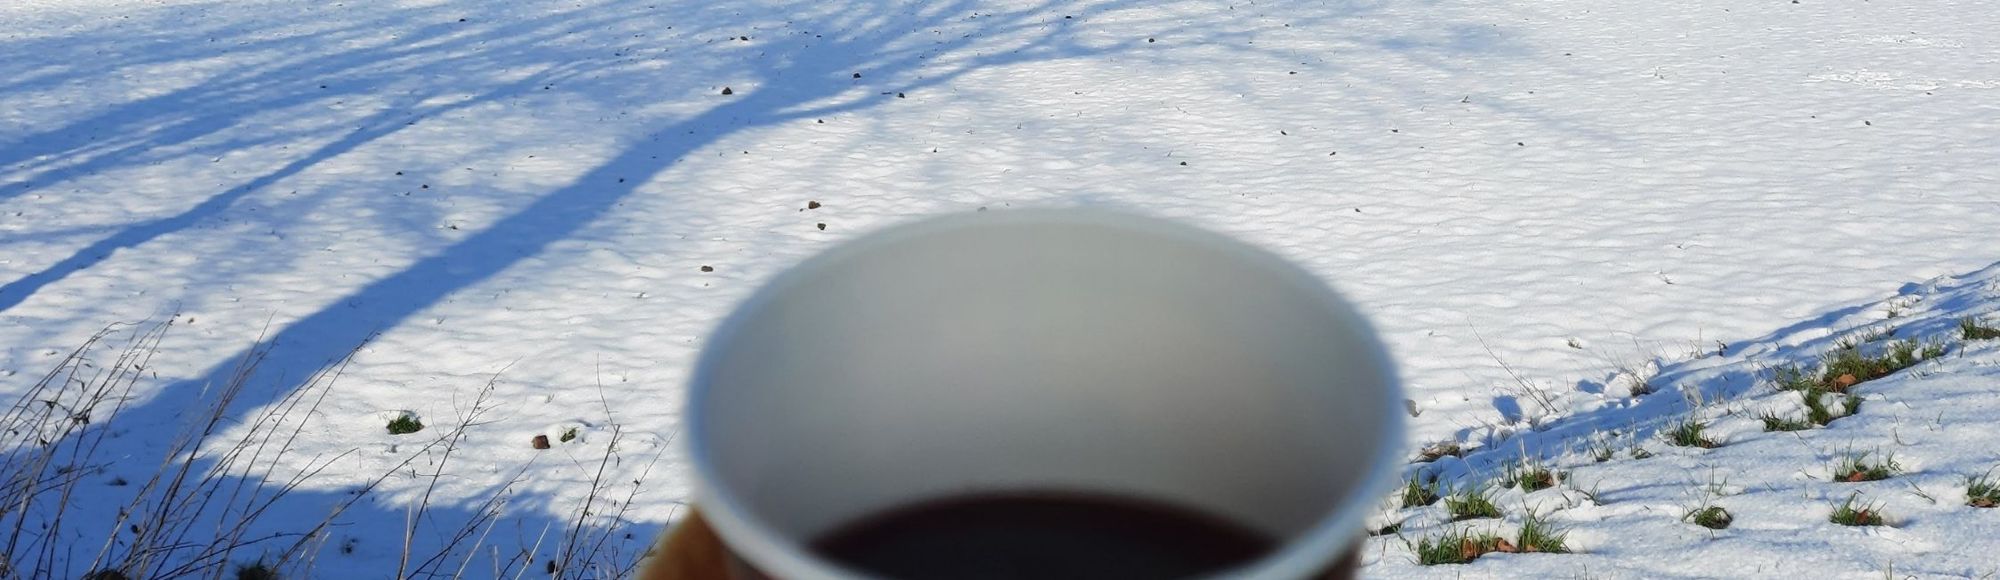 Koffie to go tijdens het winterwandelen